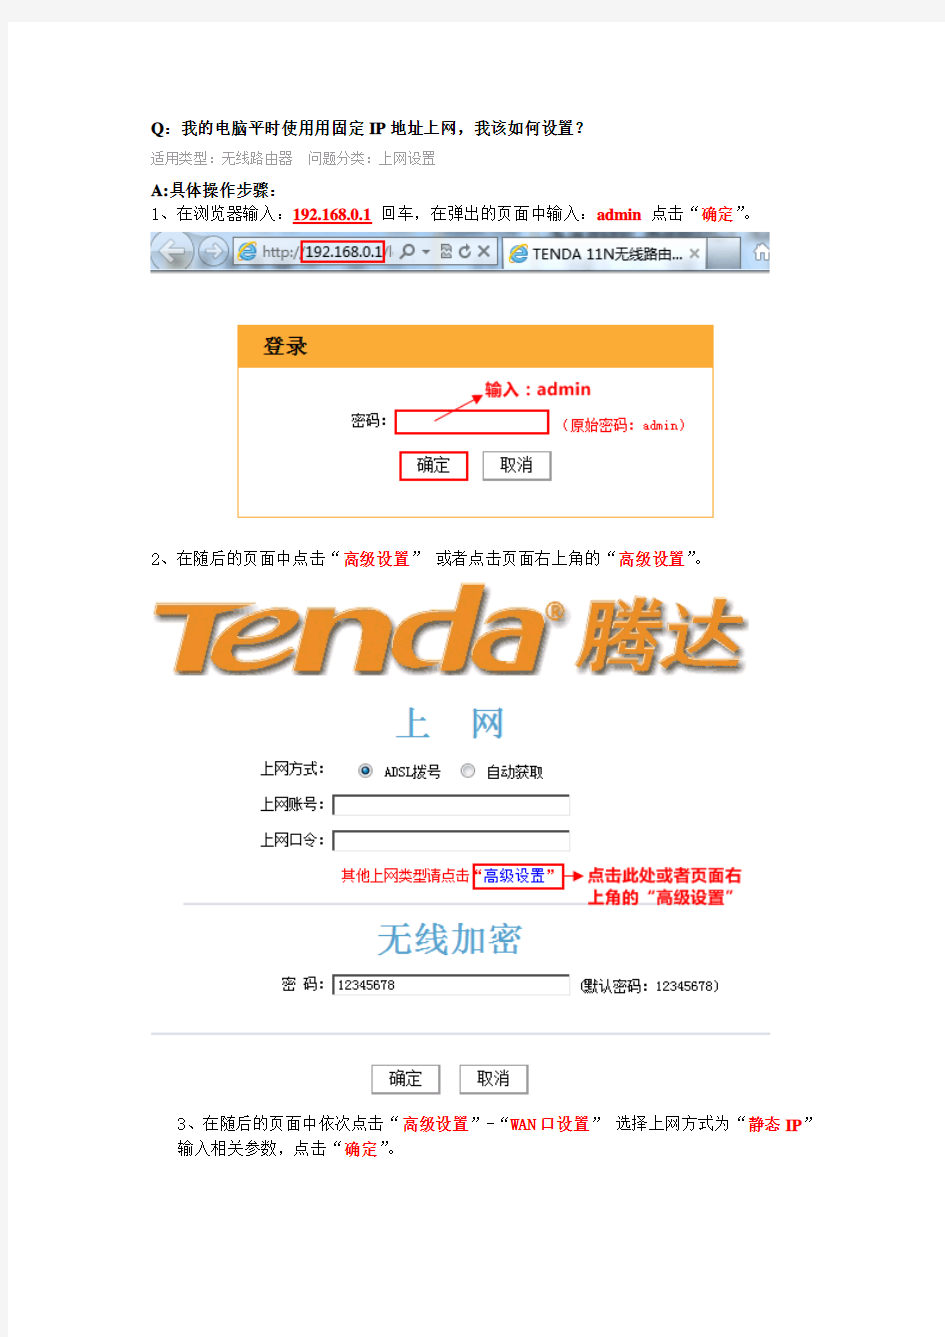 腾达(Tenda)837R 静态IP 上网设置